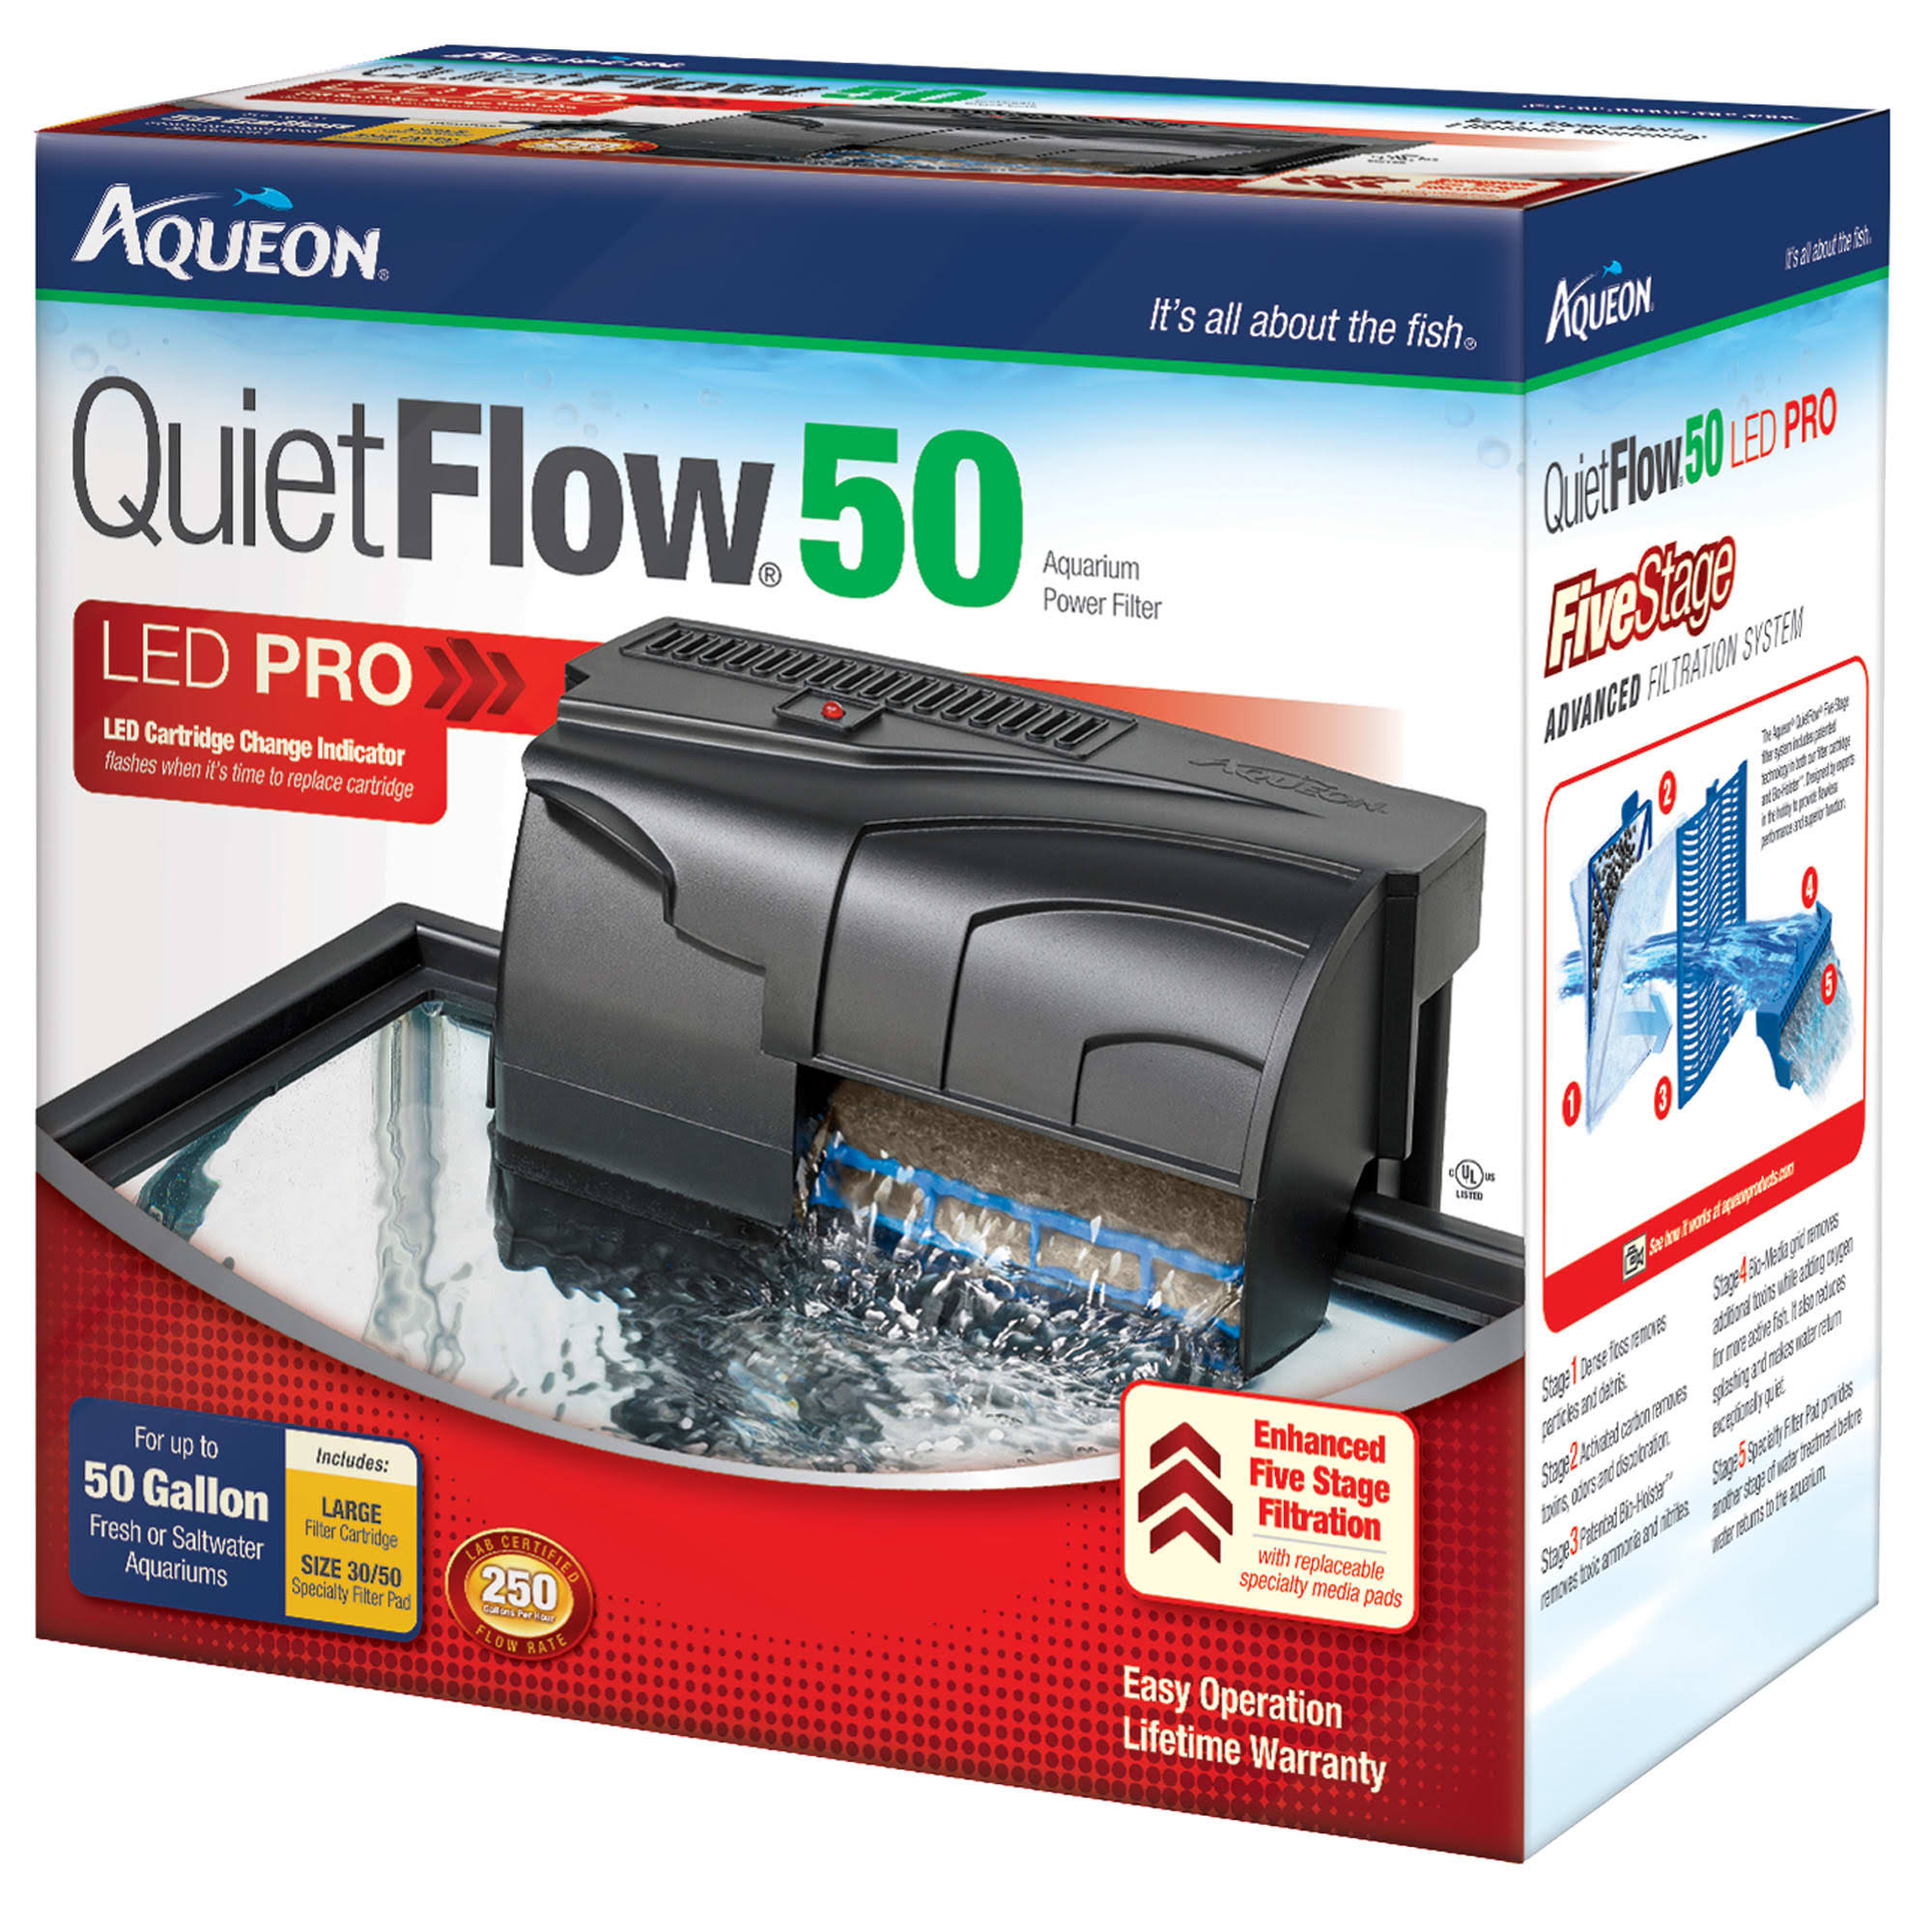 Aqueon QuietFlow LED Pro Aquarium Power Filter - 50gal, 250gph